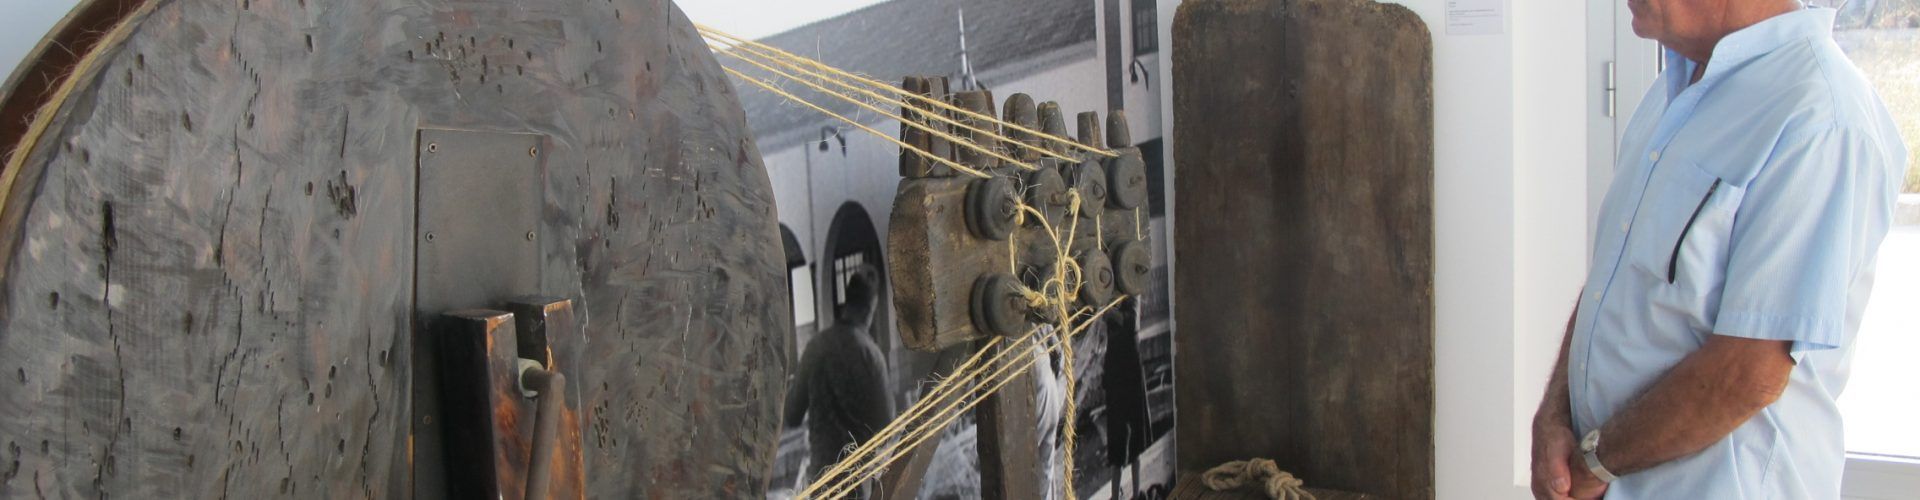 Més de 600 persones visiten el Museu dels Mariners de Benicarló durant el primer mes